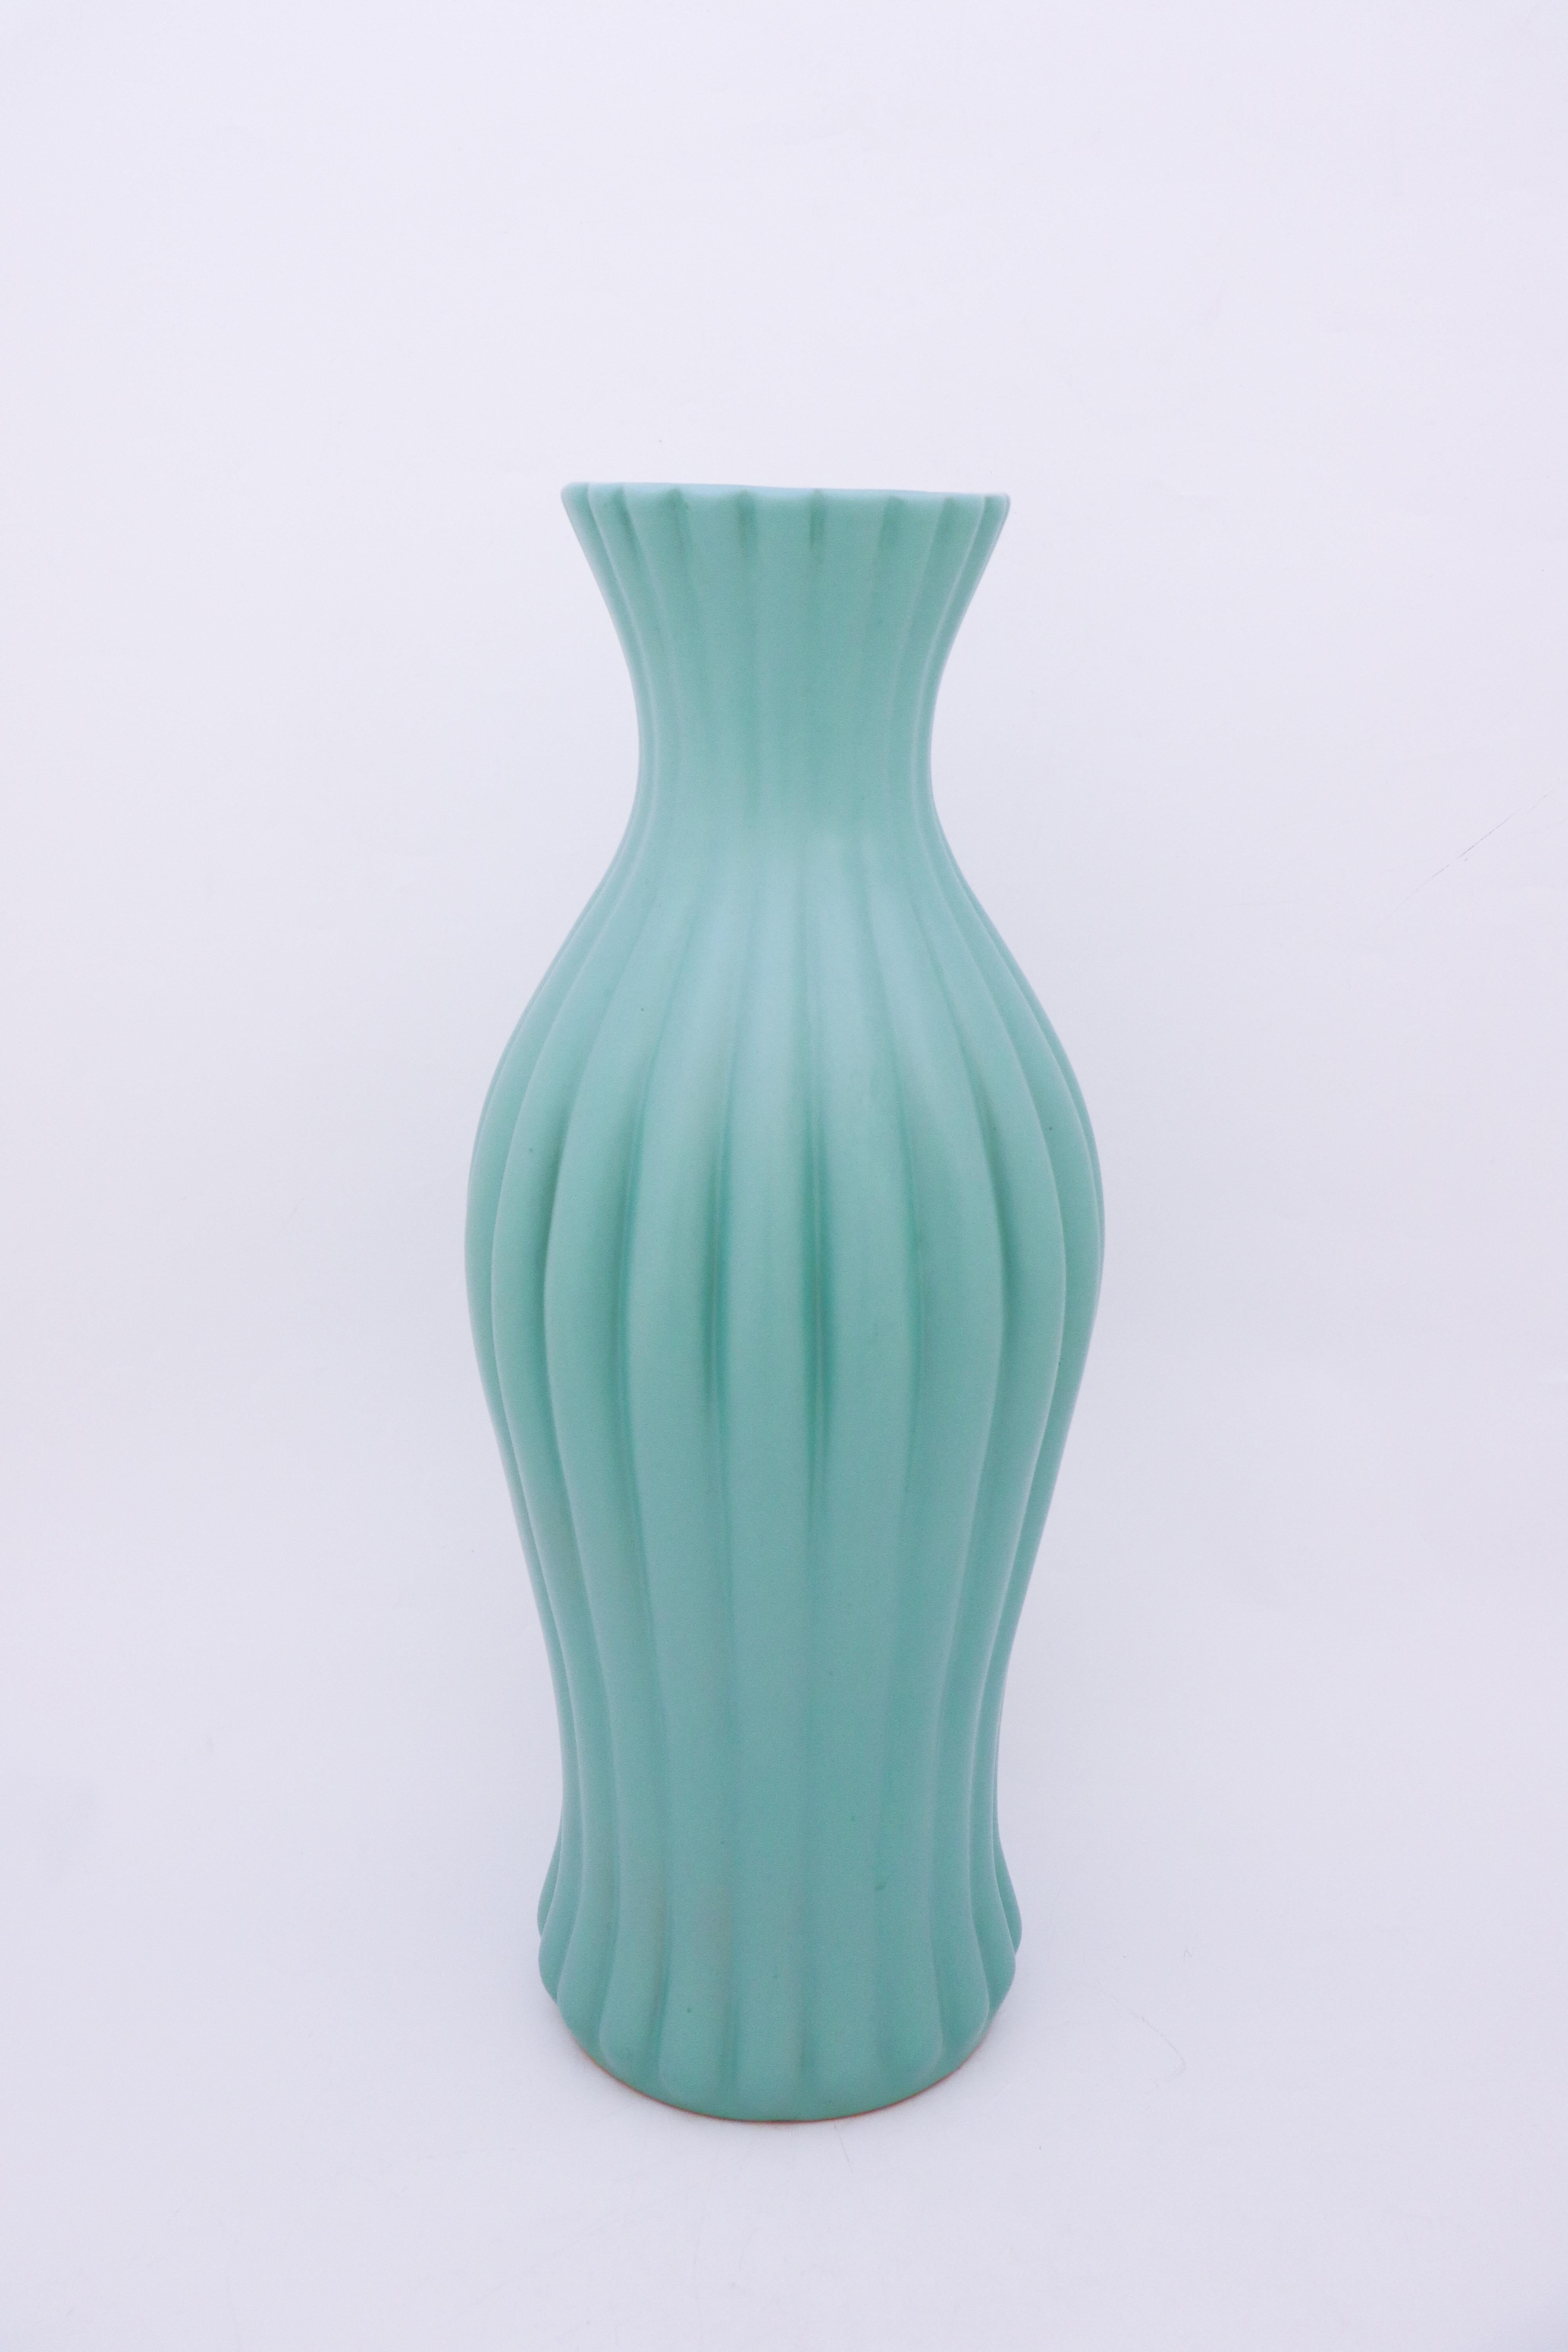 Un grand vase de sol turquoise conçu par Ewald Dahlskog chez Bo Fajans à Gefle dans les années 1930. Le vase mesure 52 cm de haut.